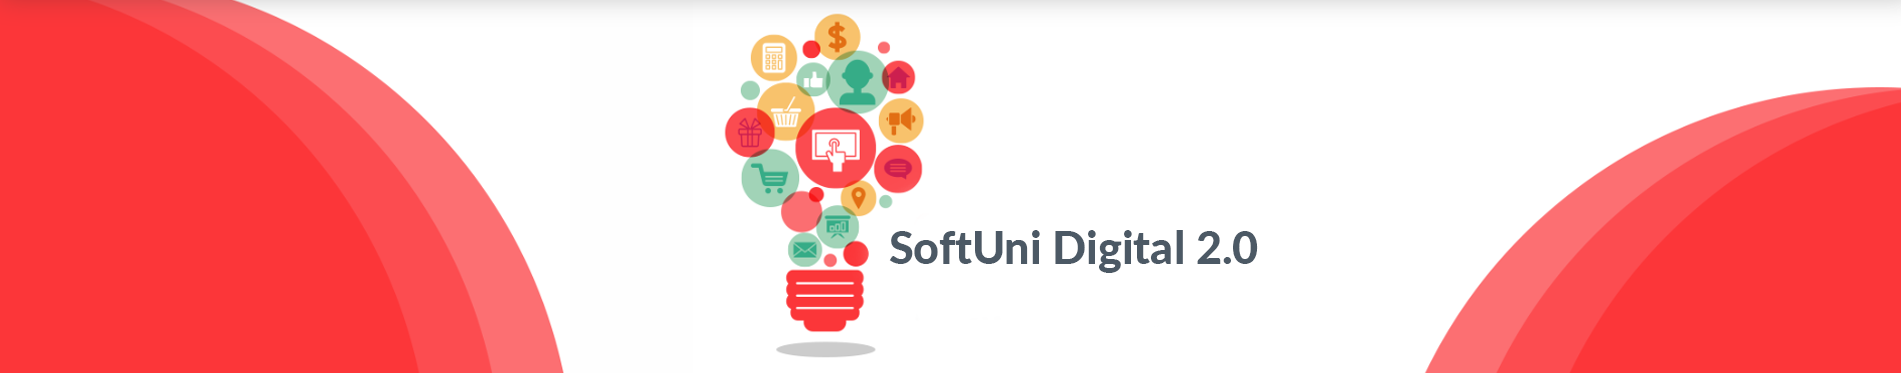 SoftUni Digital 2.0 за успешна кариера в дигиталния маркетинг